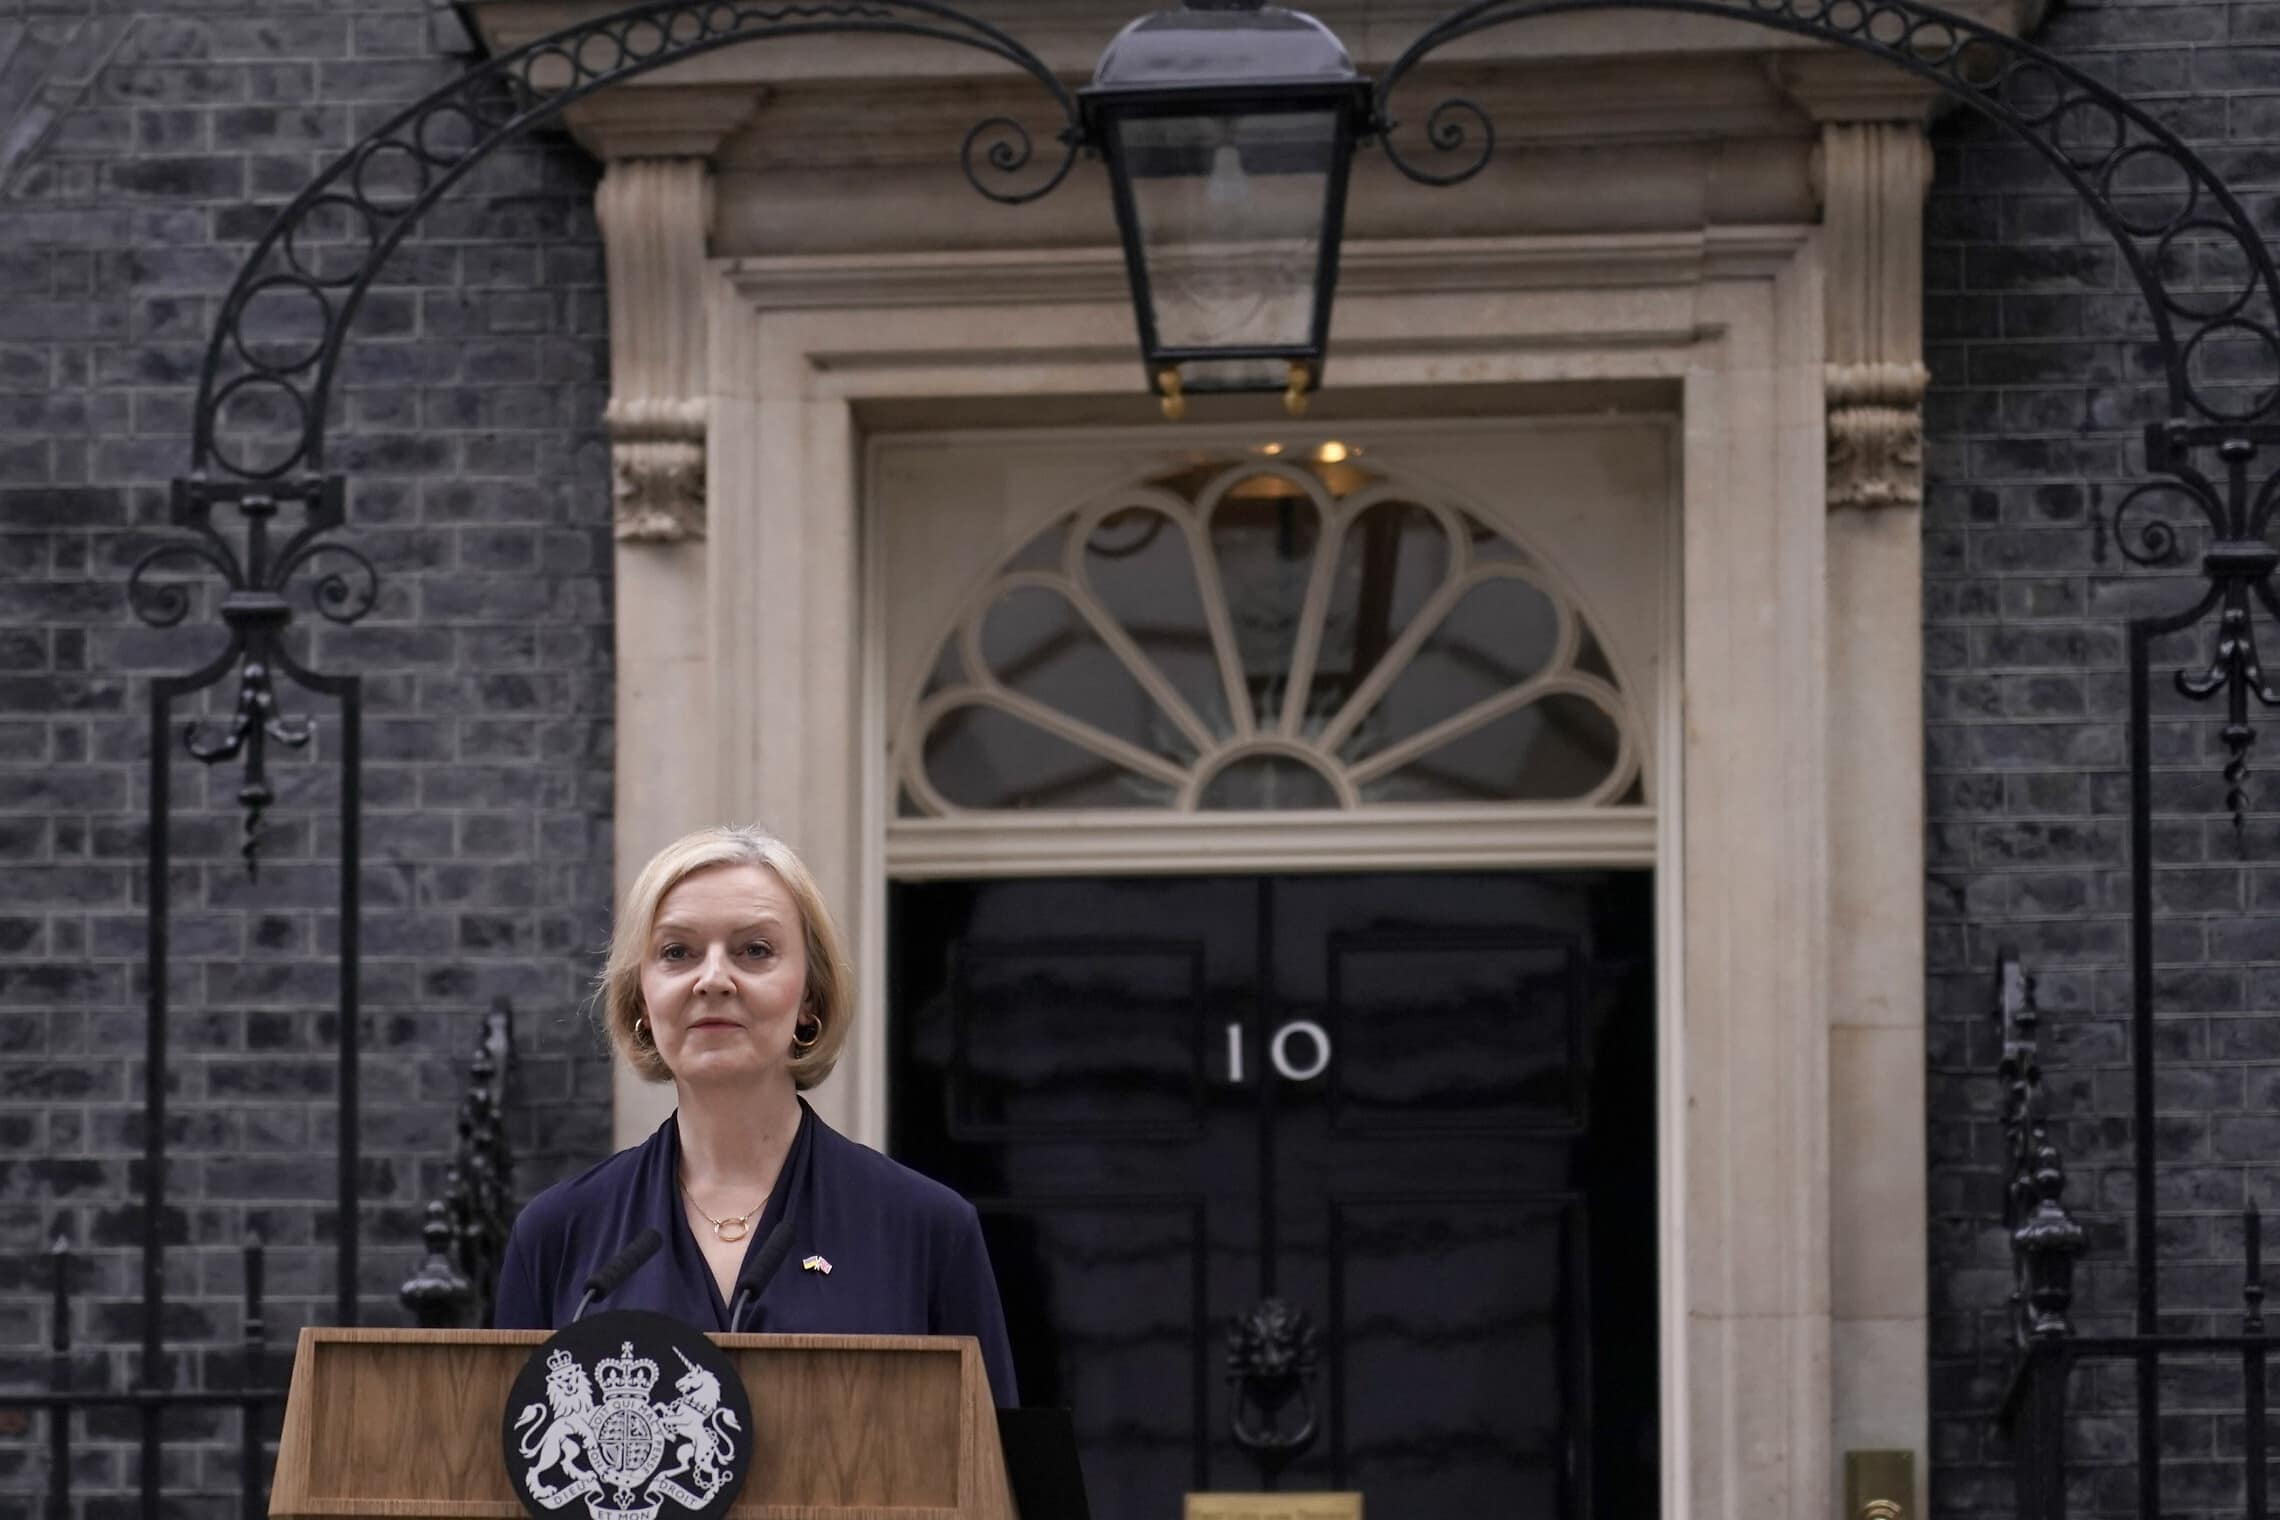 ליז טראס על מפתן דאונינג 10 מודיעה על התפטרותה מראשות ממשלת בריטניה, 44 ימים אחרי שמונתה לתפקיד. 20 באוקטובר 2022 (צילום: AP Photo/Alberto Pezzali)